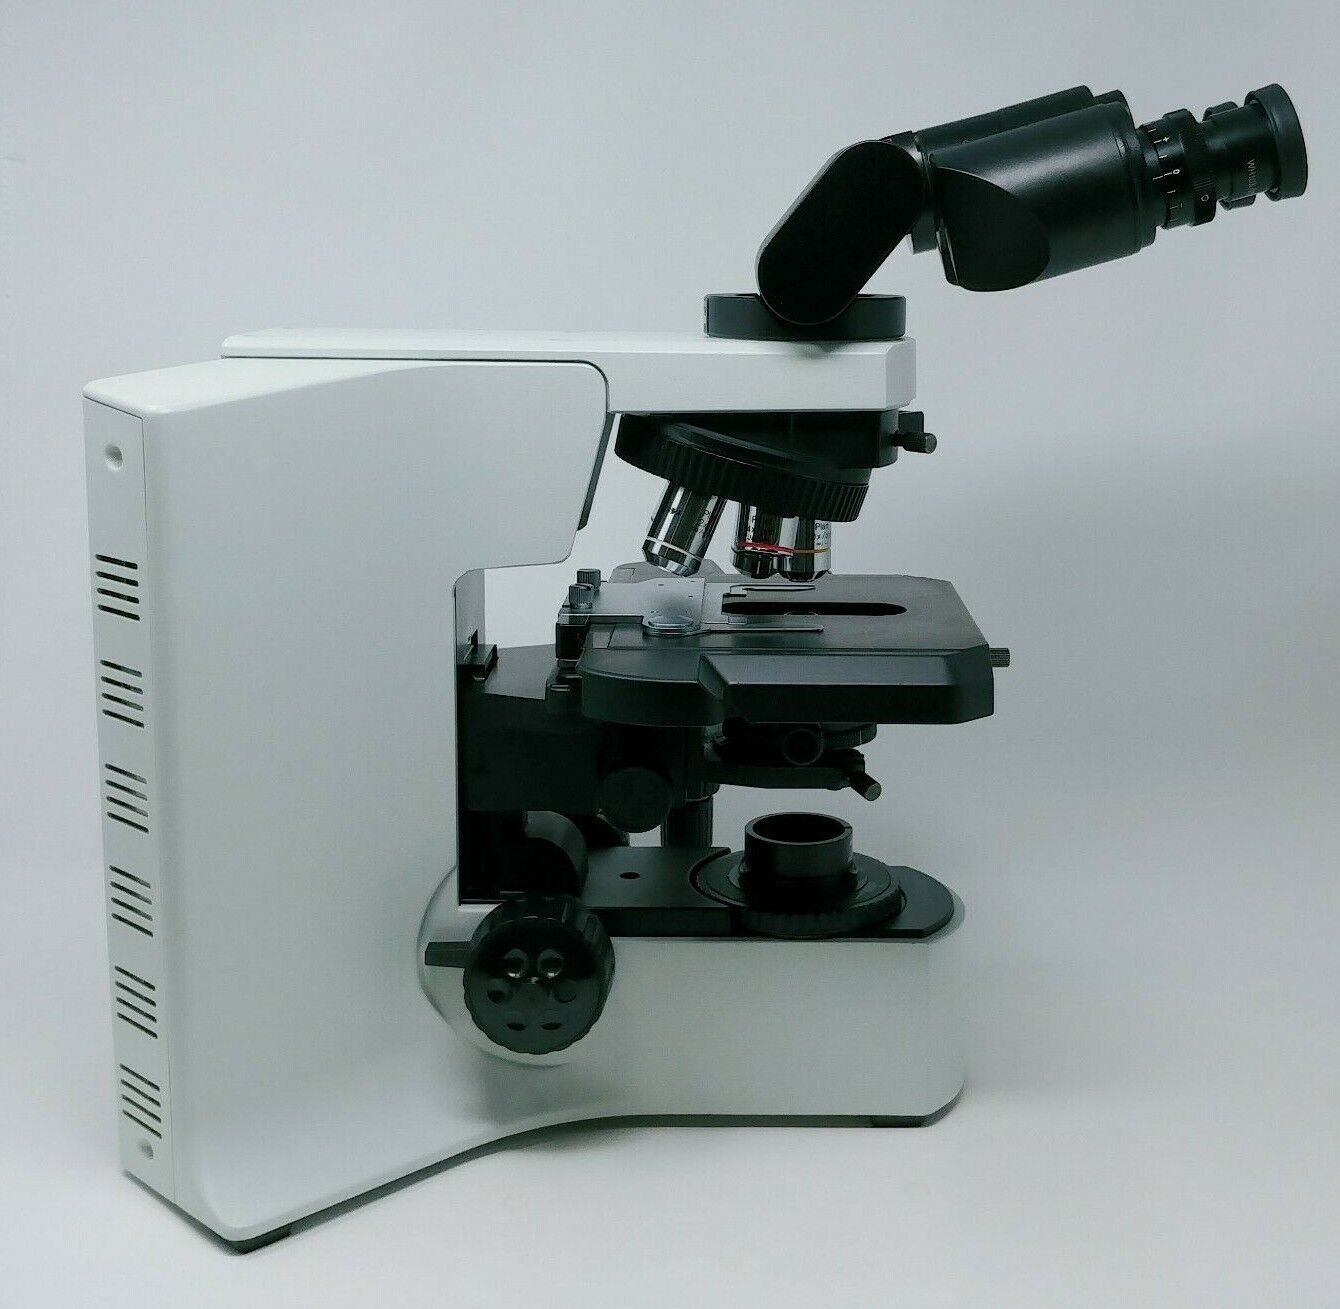 Olympus Microscope BX41 with Tilting Head, Polarizer, Analyzer, U-POT U-ANT - microscopemarketplace